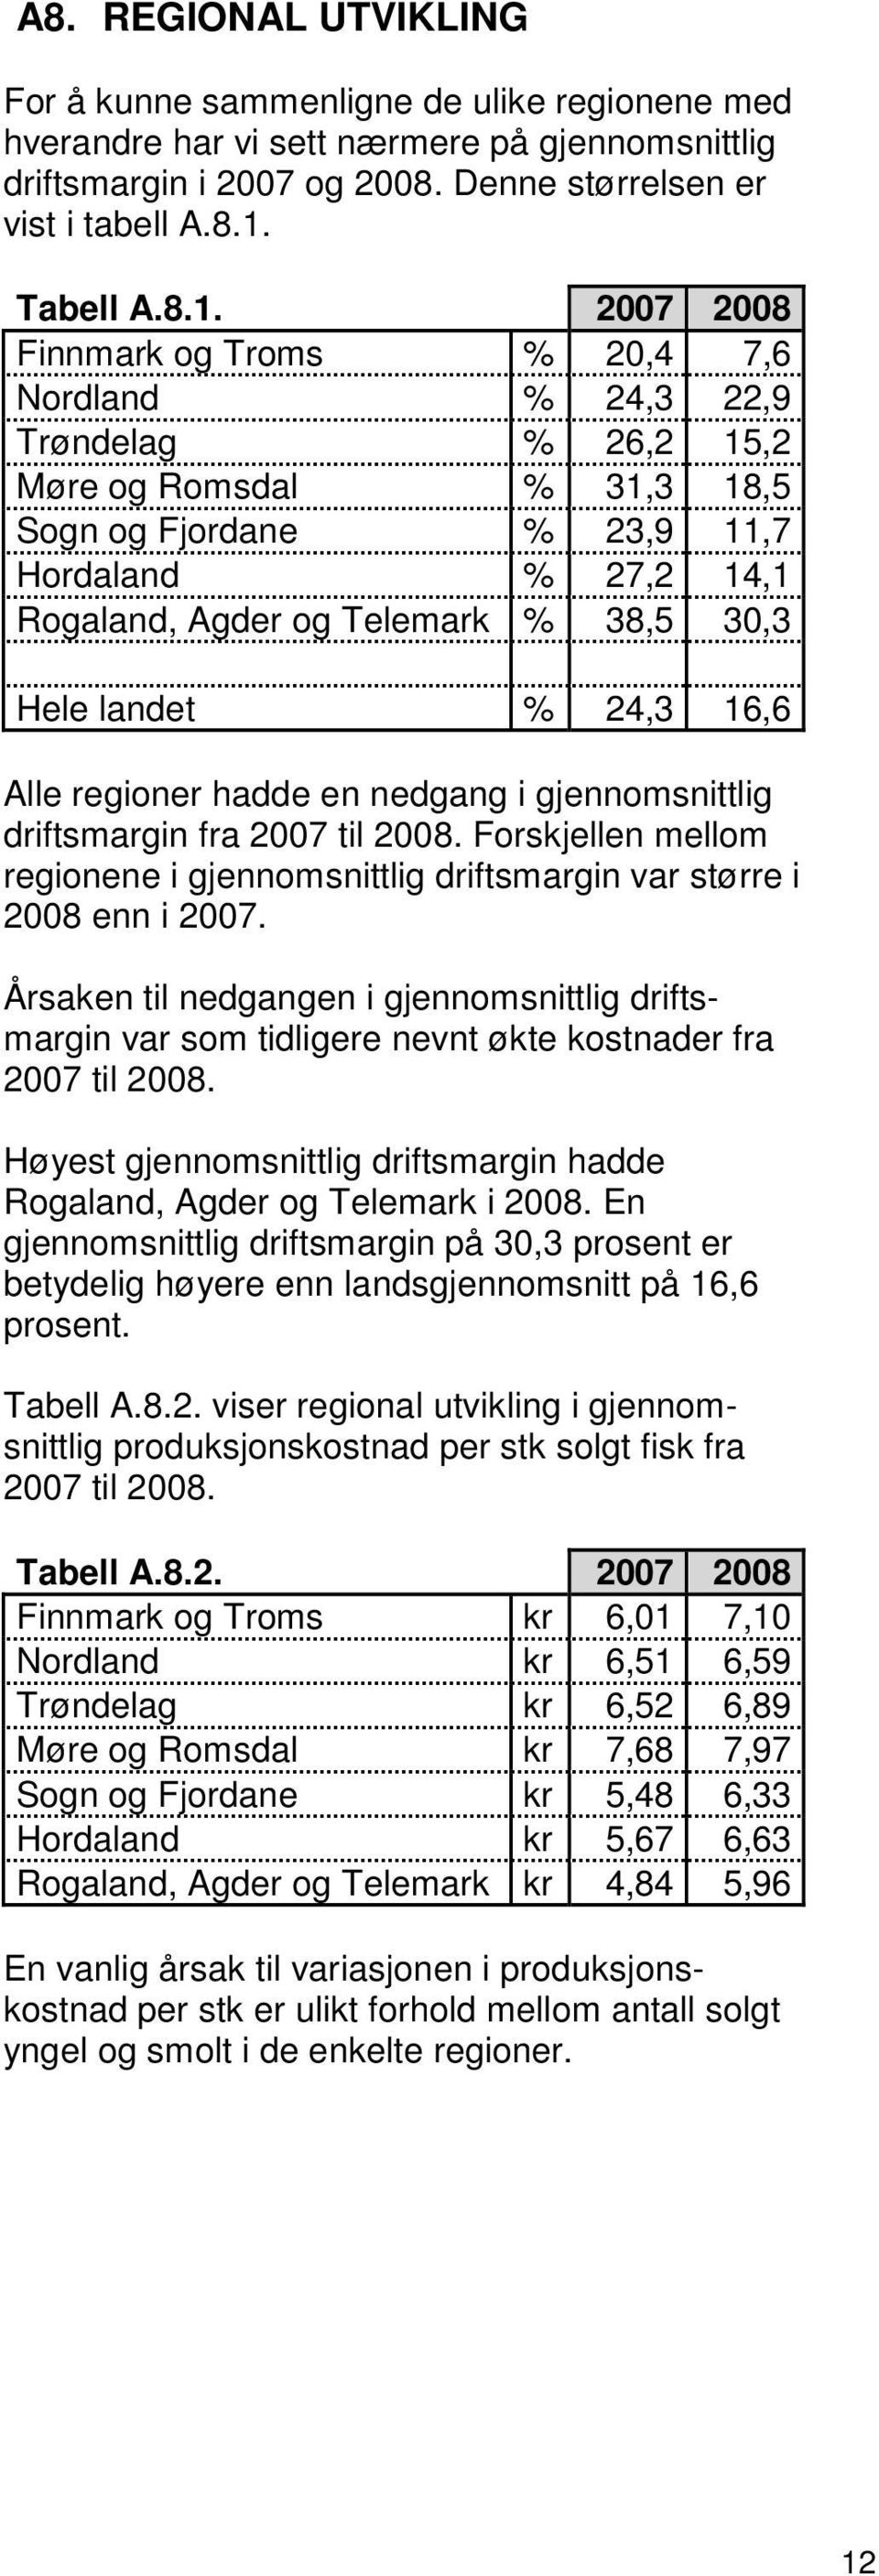 2007 2008 Finnmark og Troms % 20,4 7,6 Nordland % 24,3 22,9 Trøndelag % 26,2 15,2 Møre og Romsdal % 31,3 18,5 Sogn og Fjordane % 23,9 11,7 Hordaland % 27,2 14,1 Rogaland, Agder og Telemark % 38,5